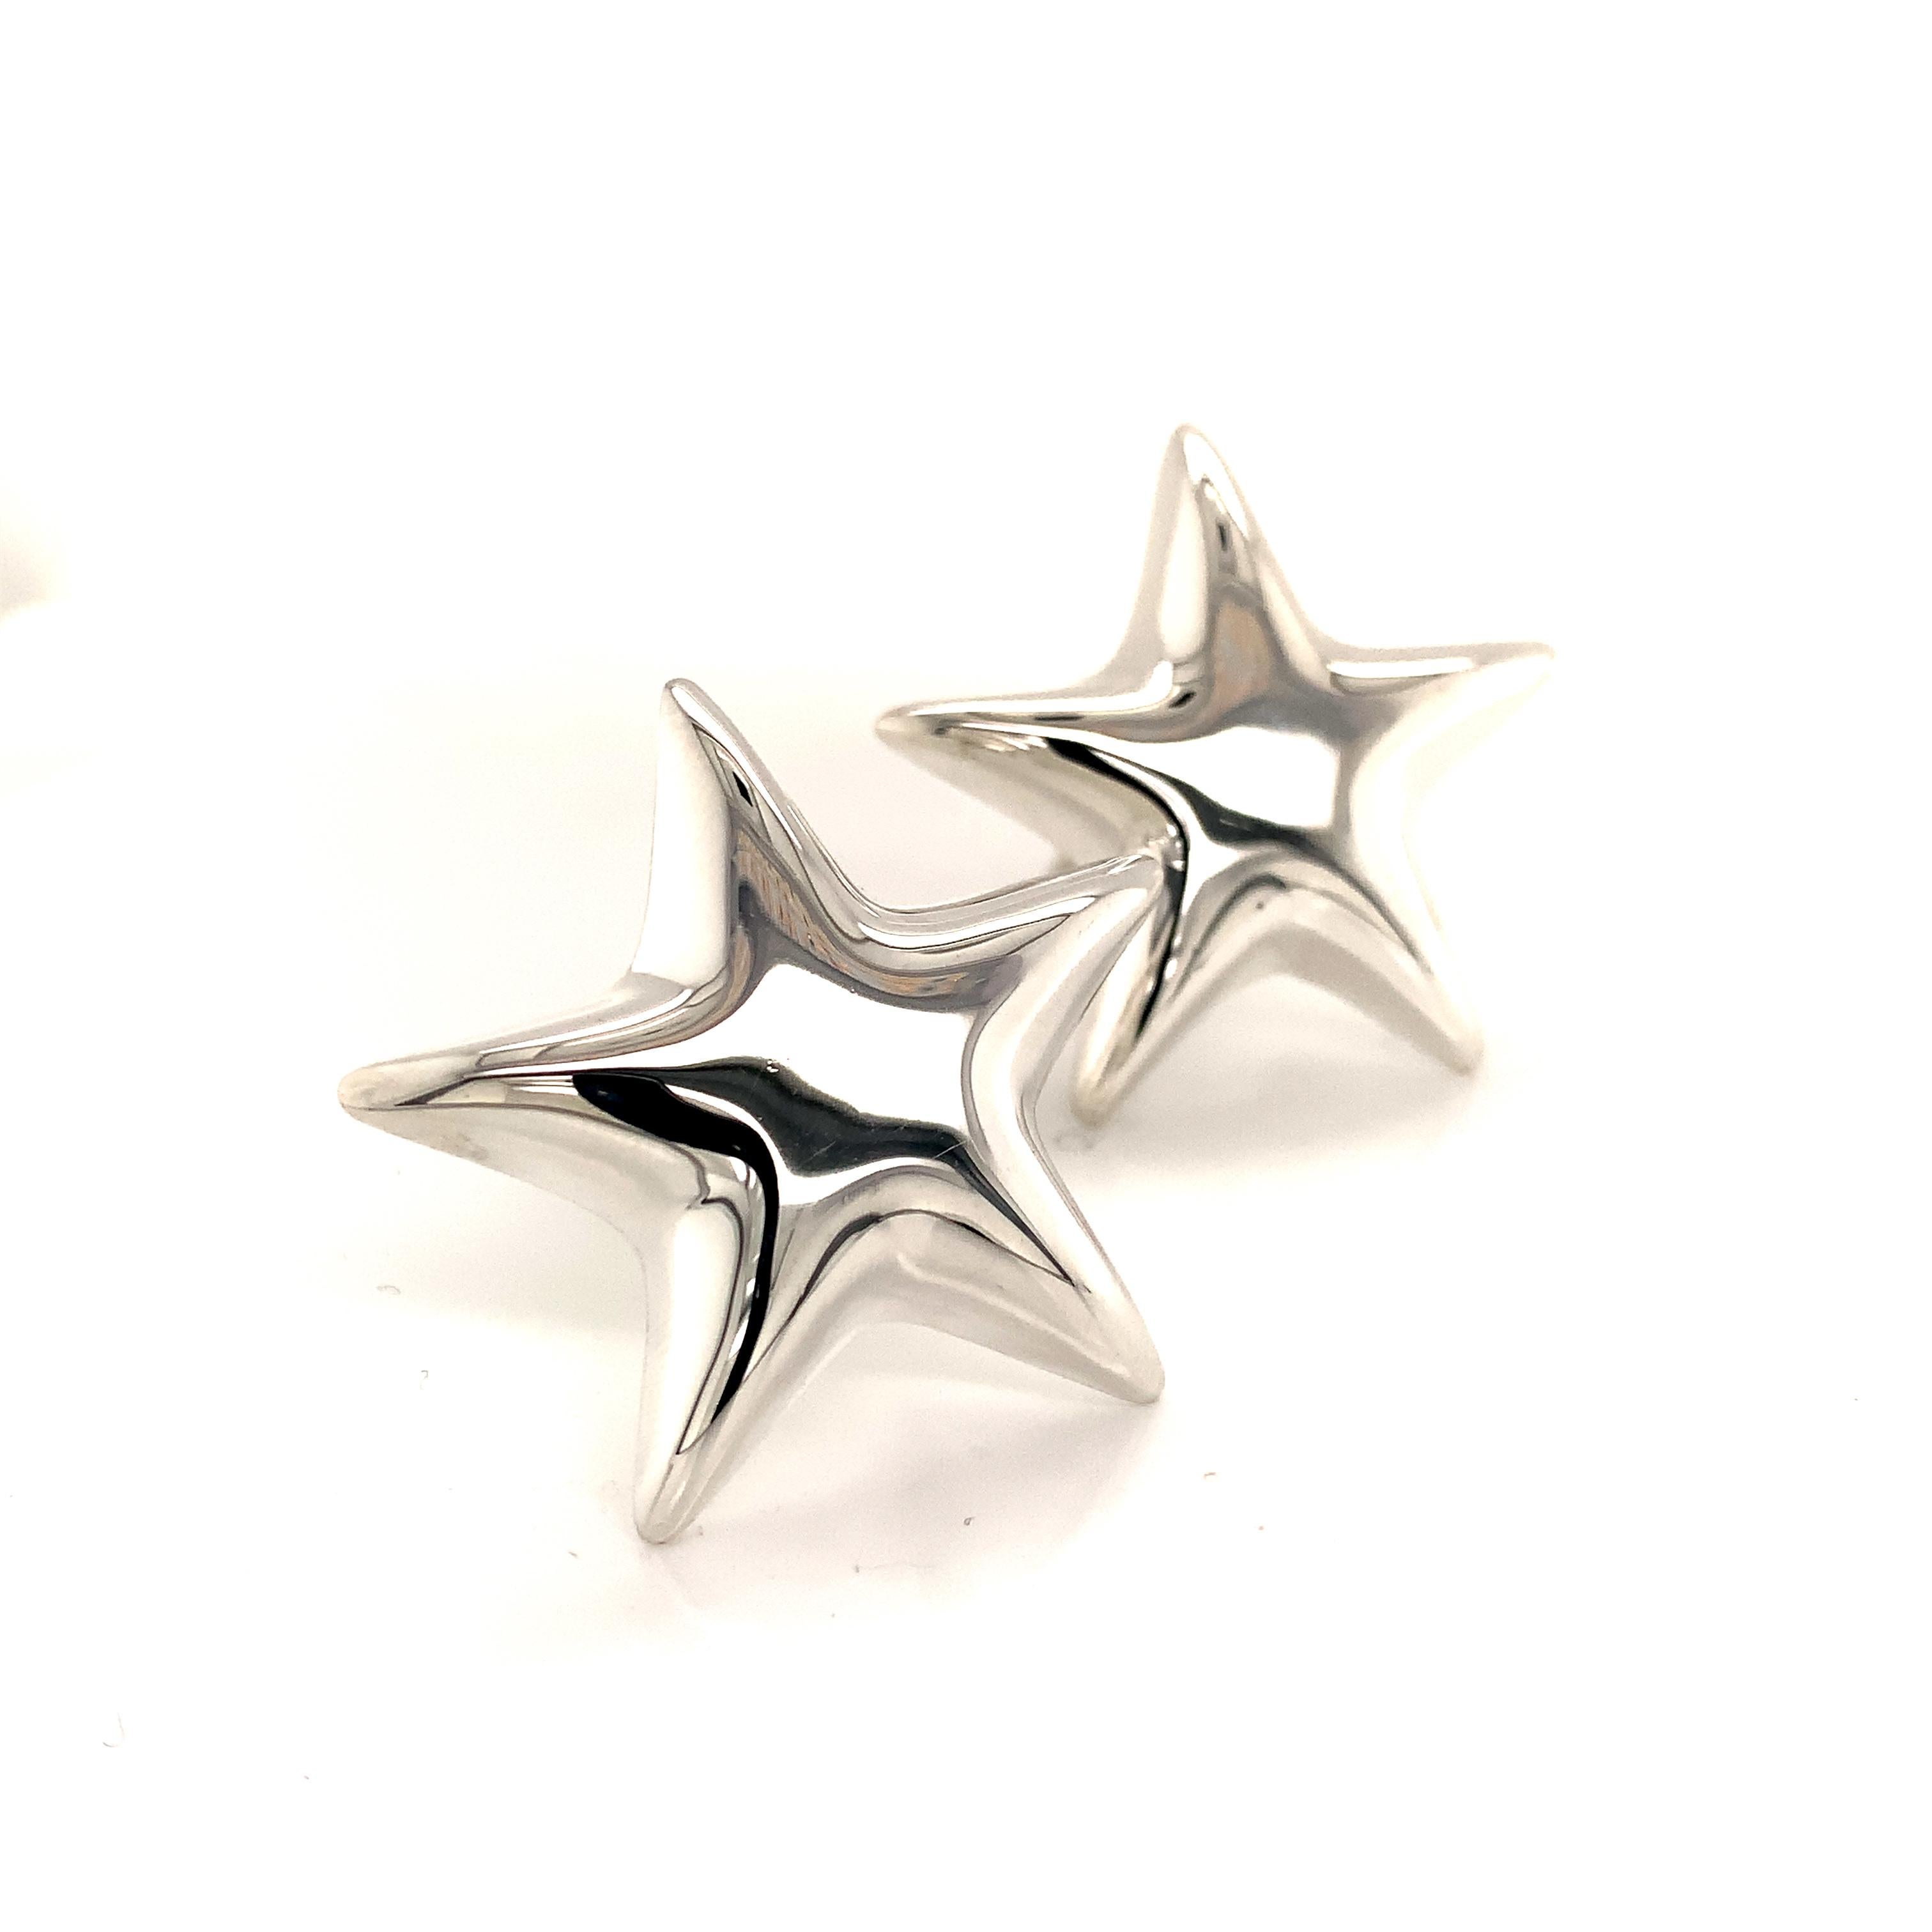 Tiffany & Co Estate Omega Back Star Earrings Argent Sterling 18.9 Grams TIF92

(Pas de piercing)
 
Ces élégantes boucles d'oreilles étoiles authentiques de Tiffany & Co. pèsent 18,9 grammes.

VENDEUR DE CONFIANCE DEPUIS 2002
 
VEUILLEZ VOIR NOS